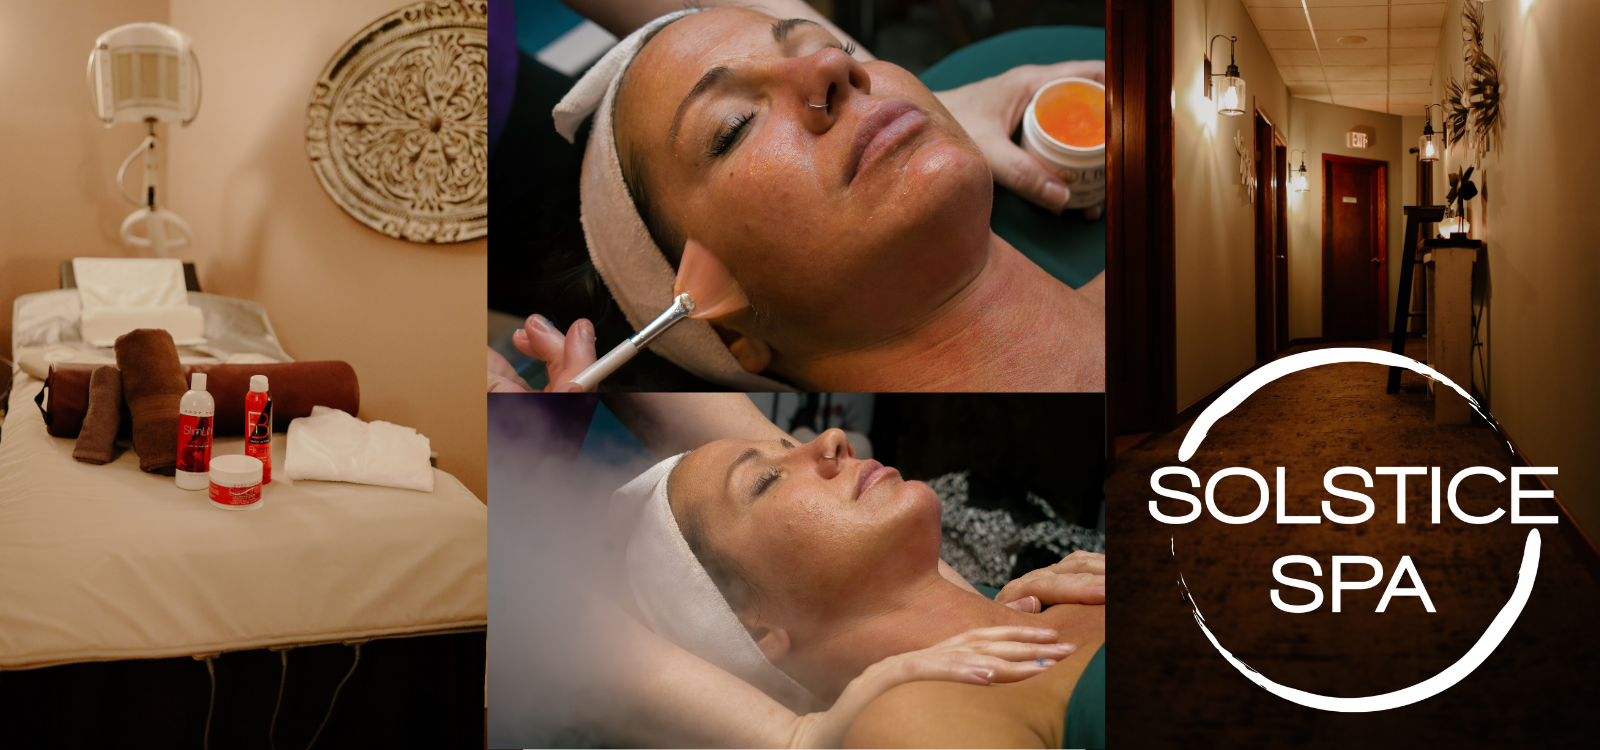 Solstice Spa - Massage, Facials, Sauna, Fit Bodywraps & more